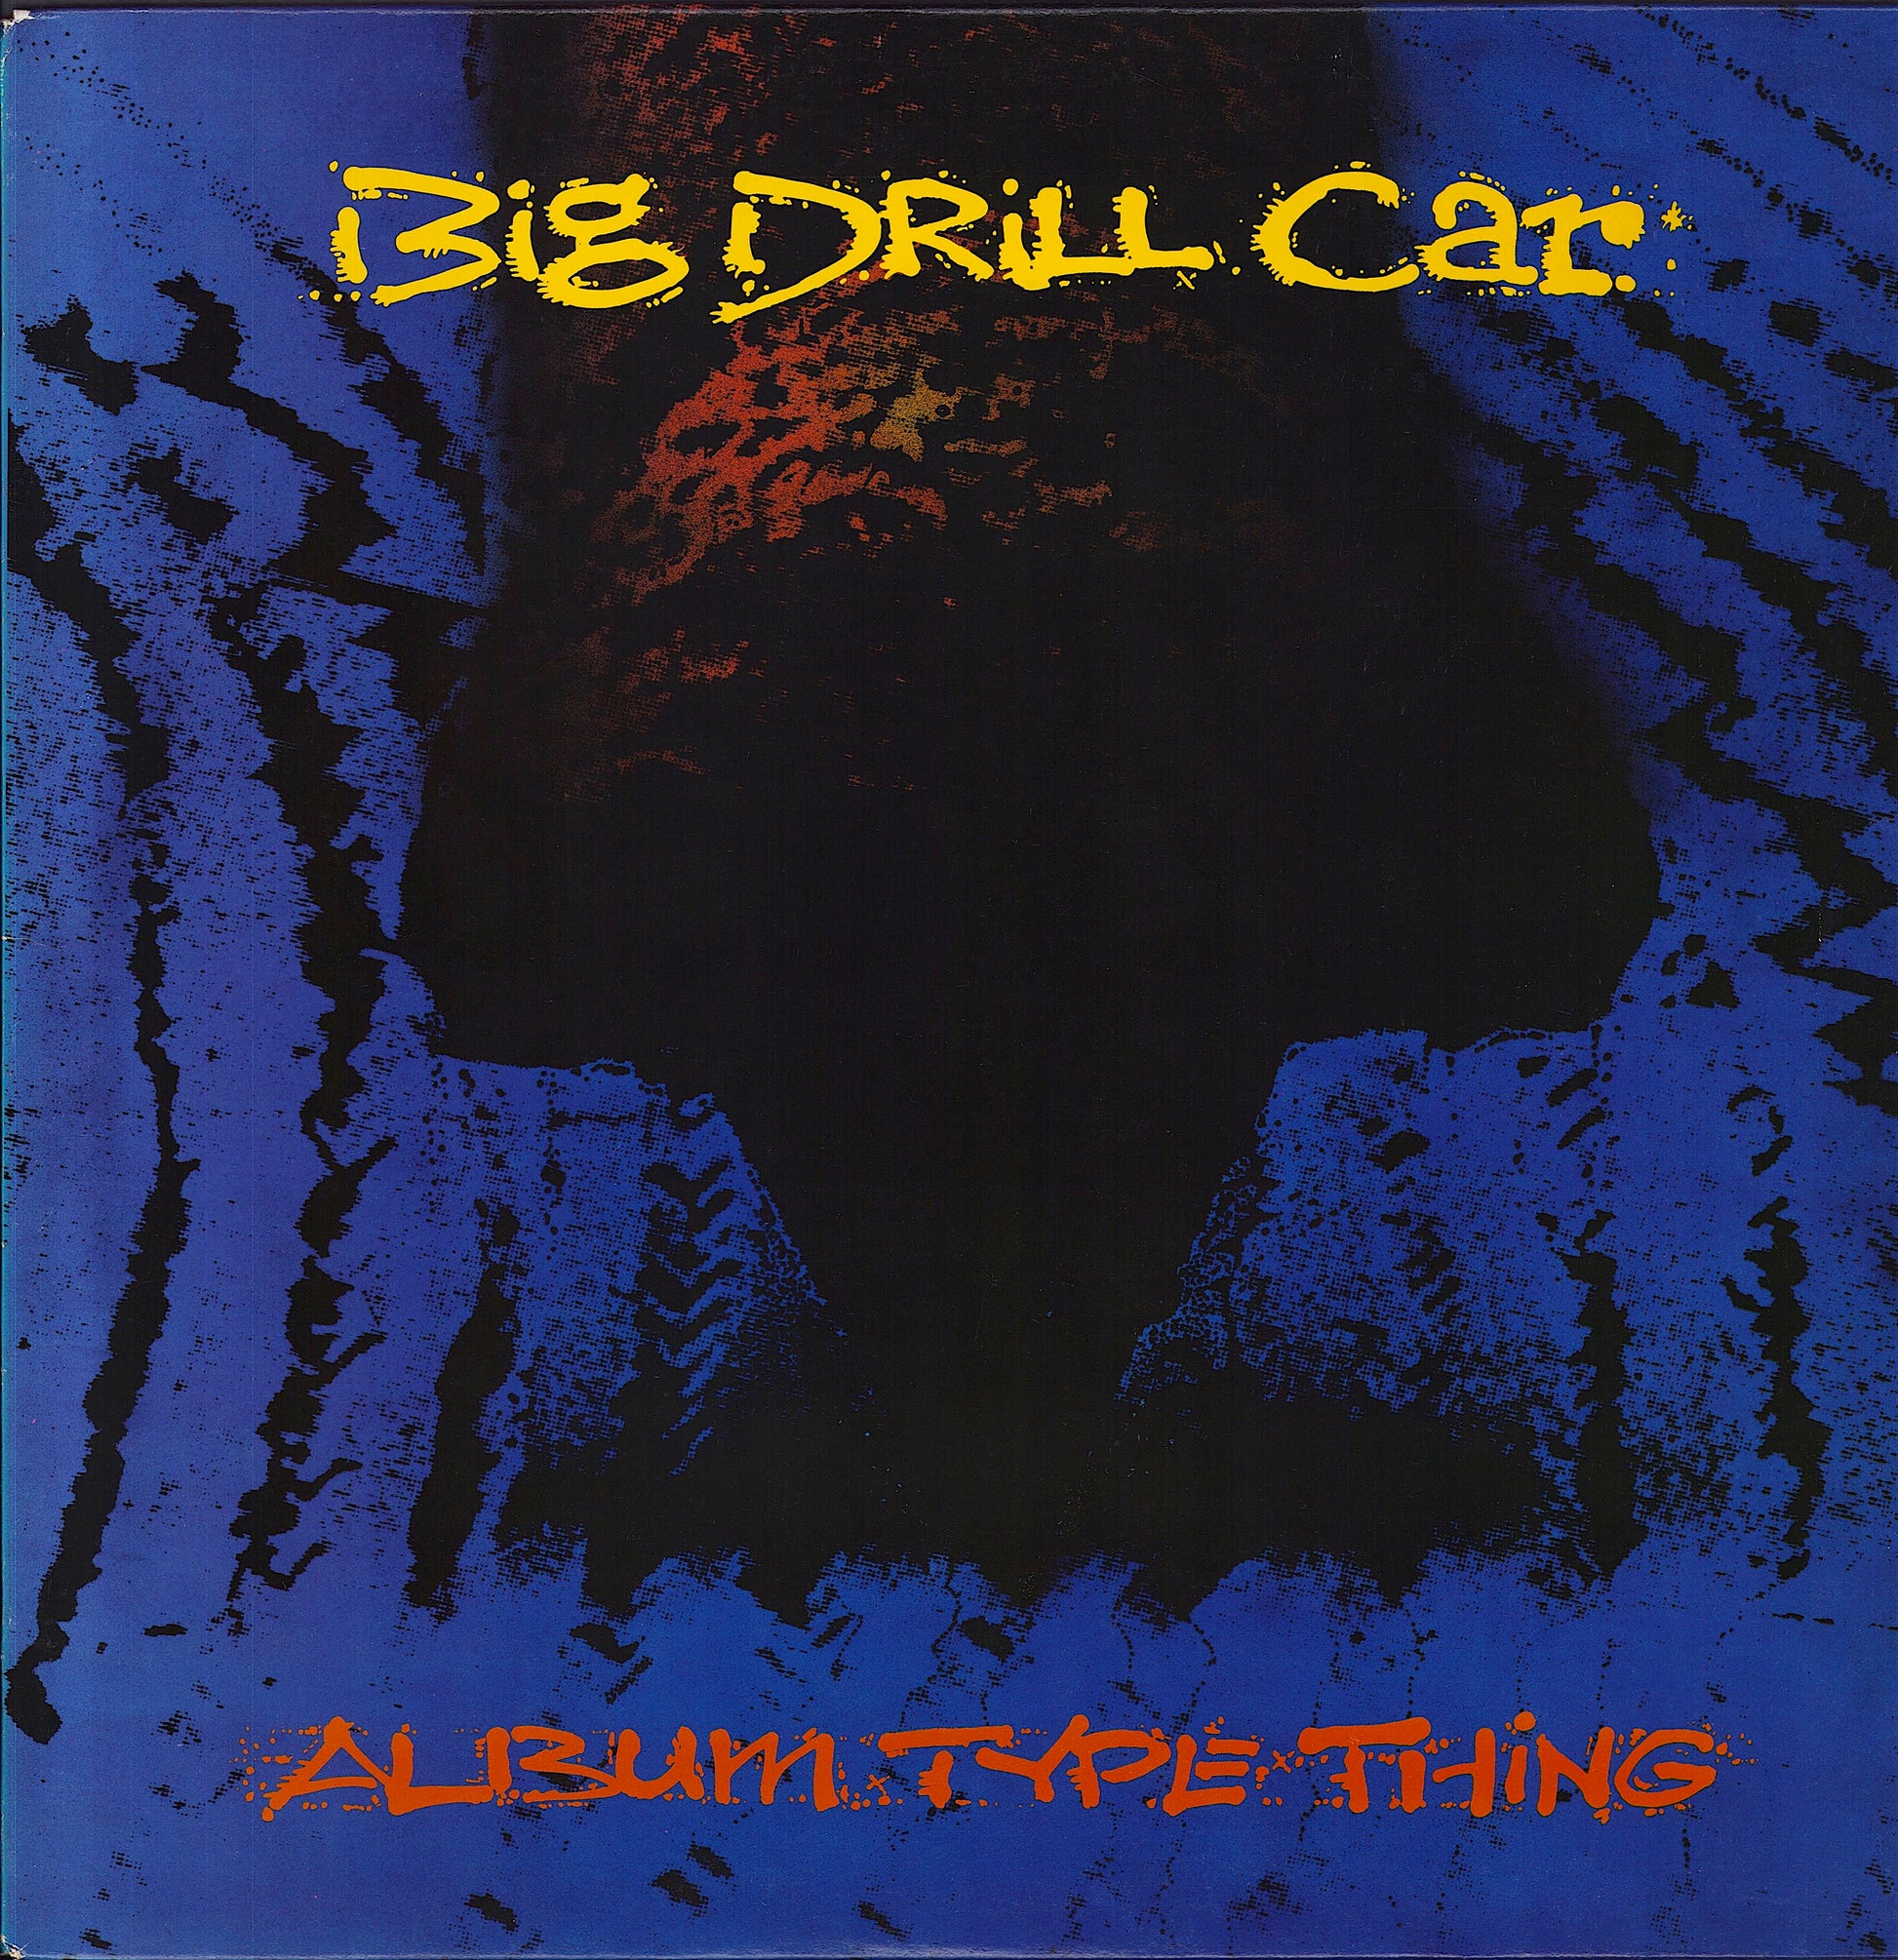 Big Drill Car ‎- Album Type Thing Vinyl LP